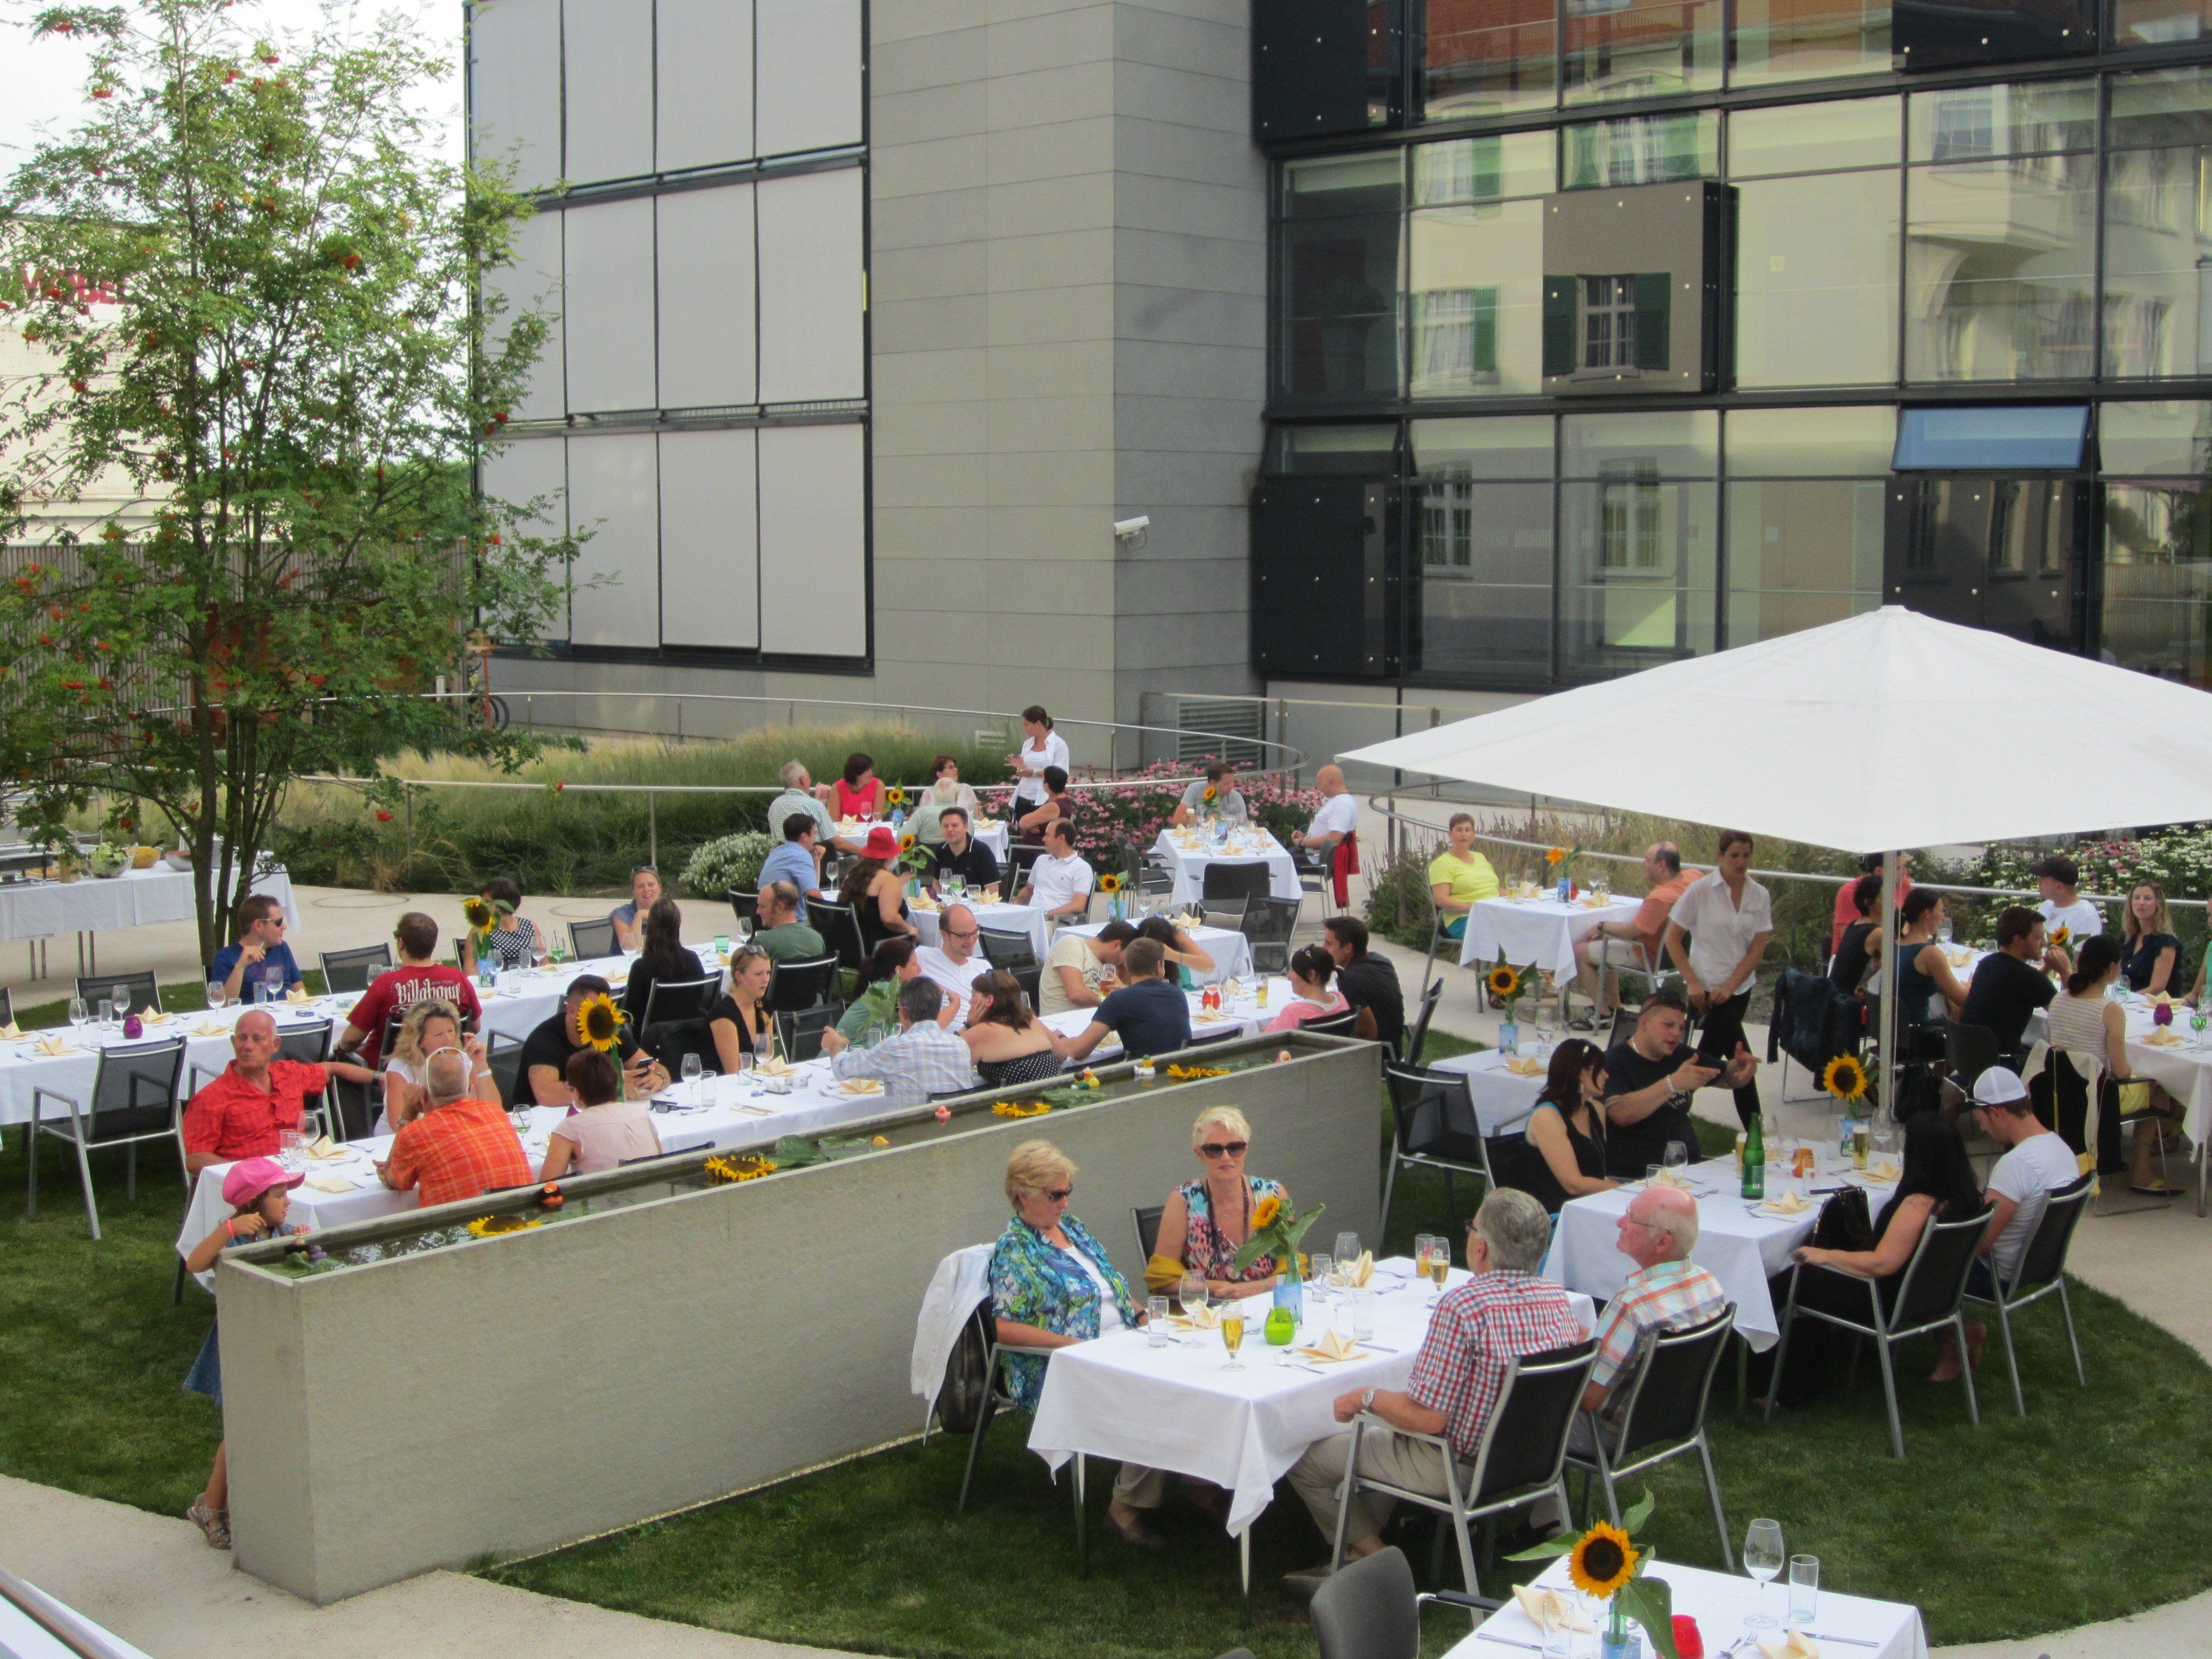 Das Café Lila feierte gemeinsam mit rund 100 Gästen seinen Barbecue-Abend